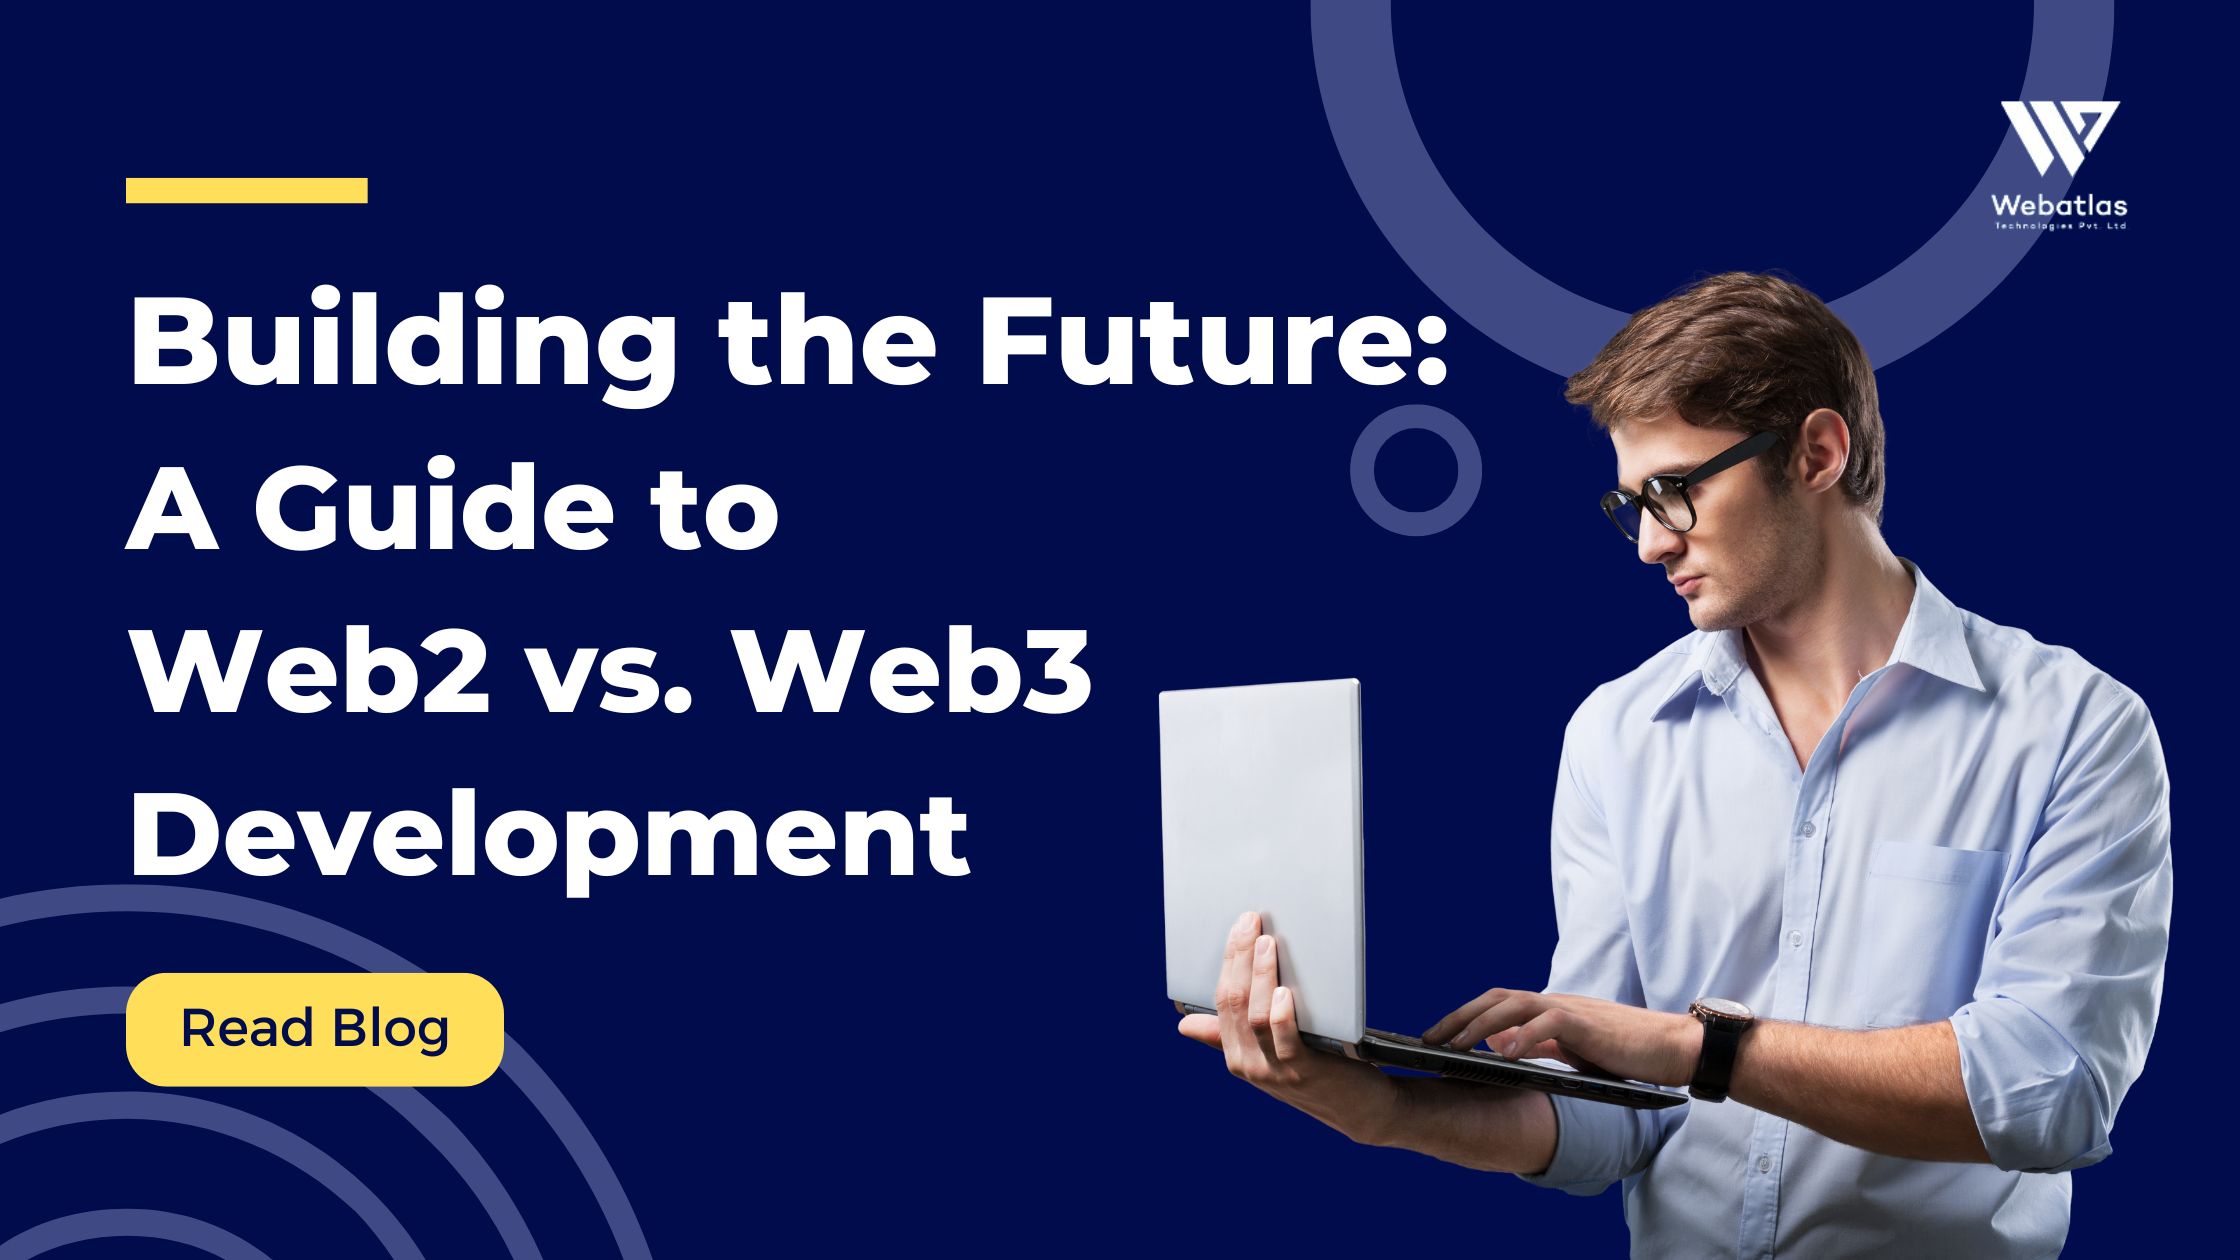 Web2 vs web3